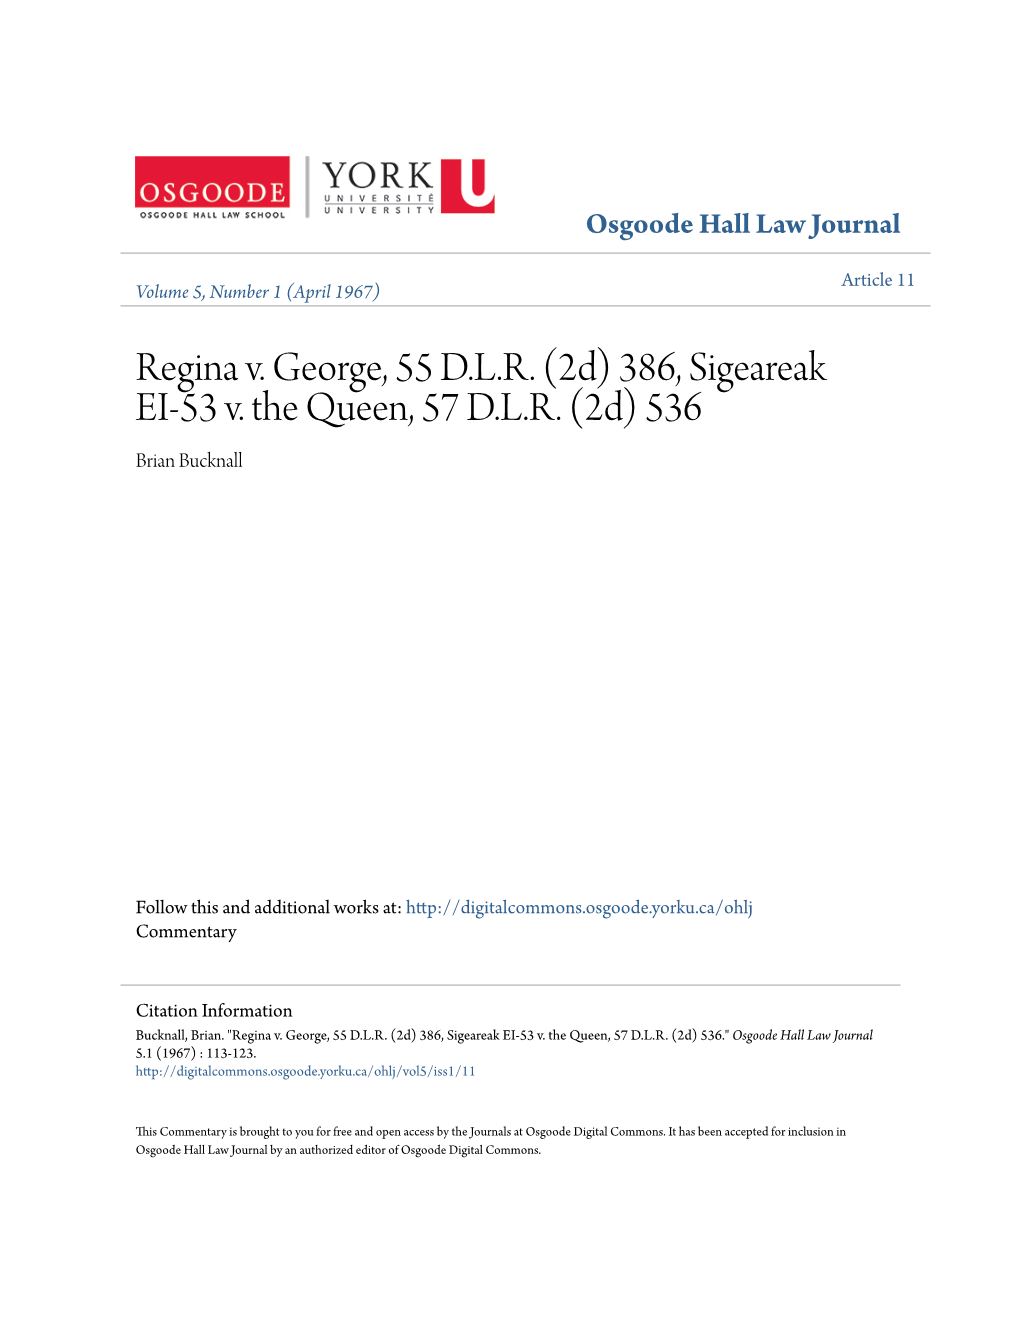 Regina V. George, 55 DLR (2D)